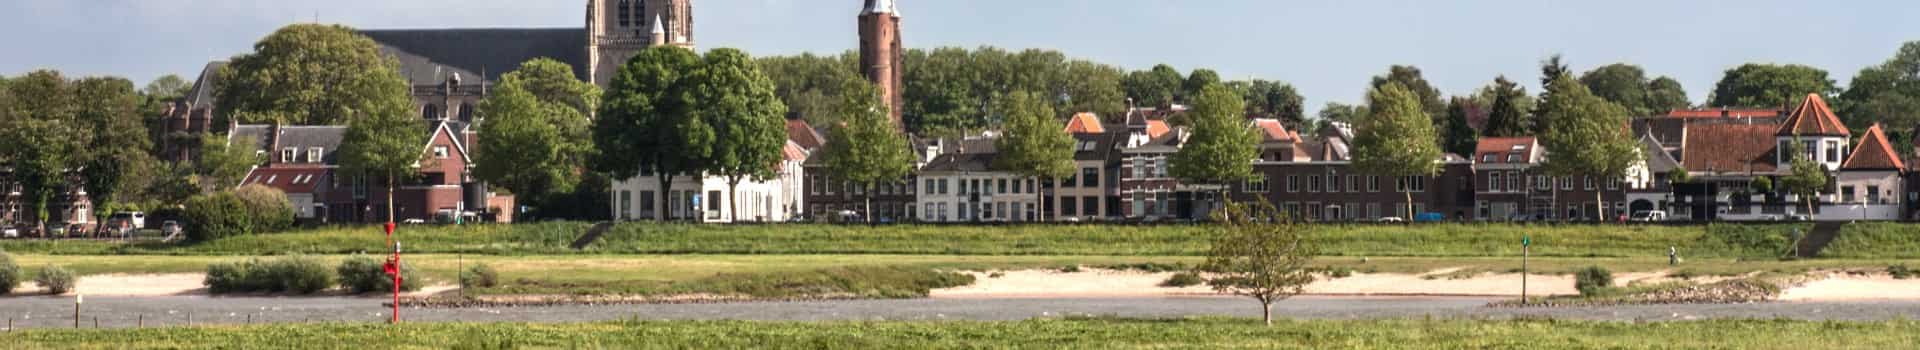 Hotels Zaltbommel